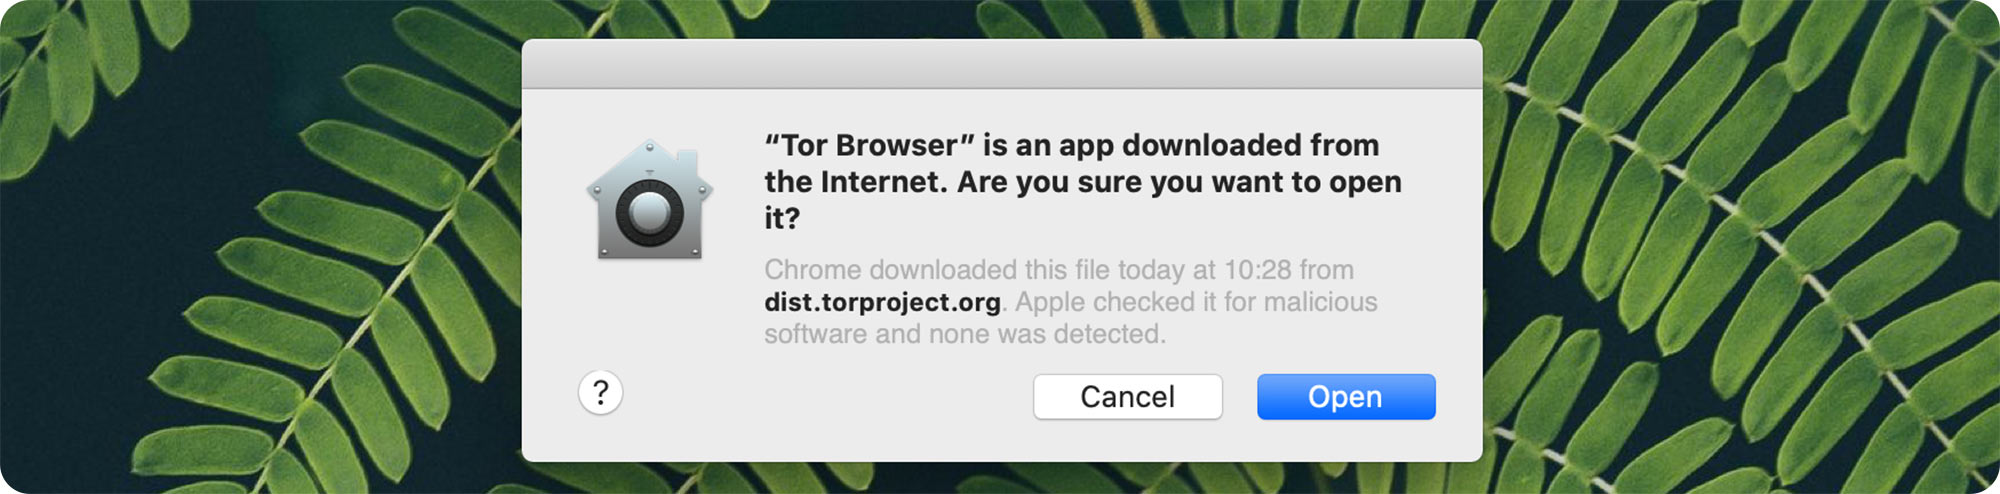 internet browser tor mac gydra